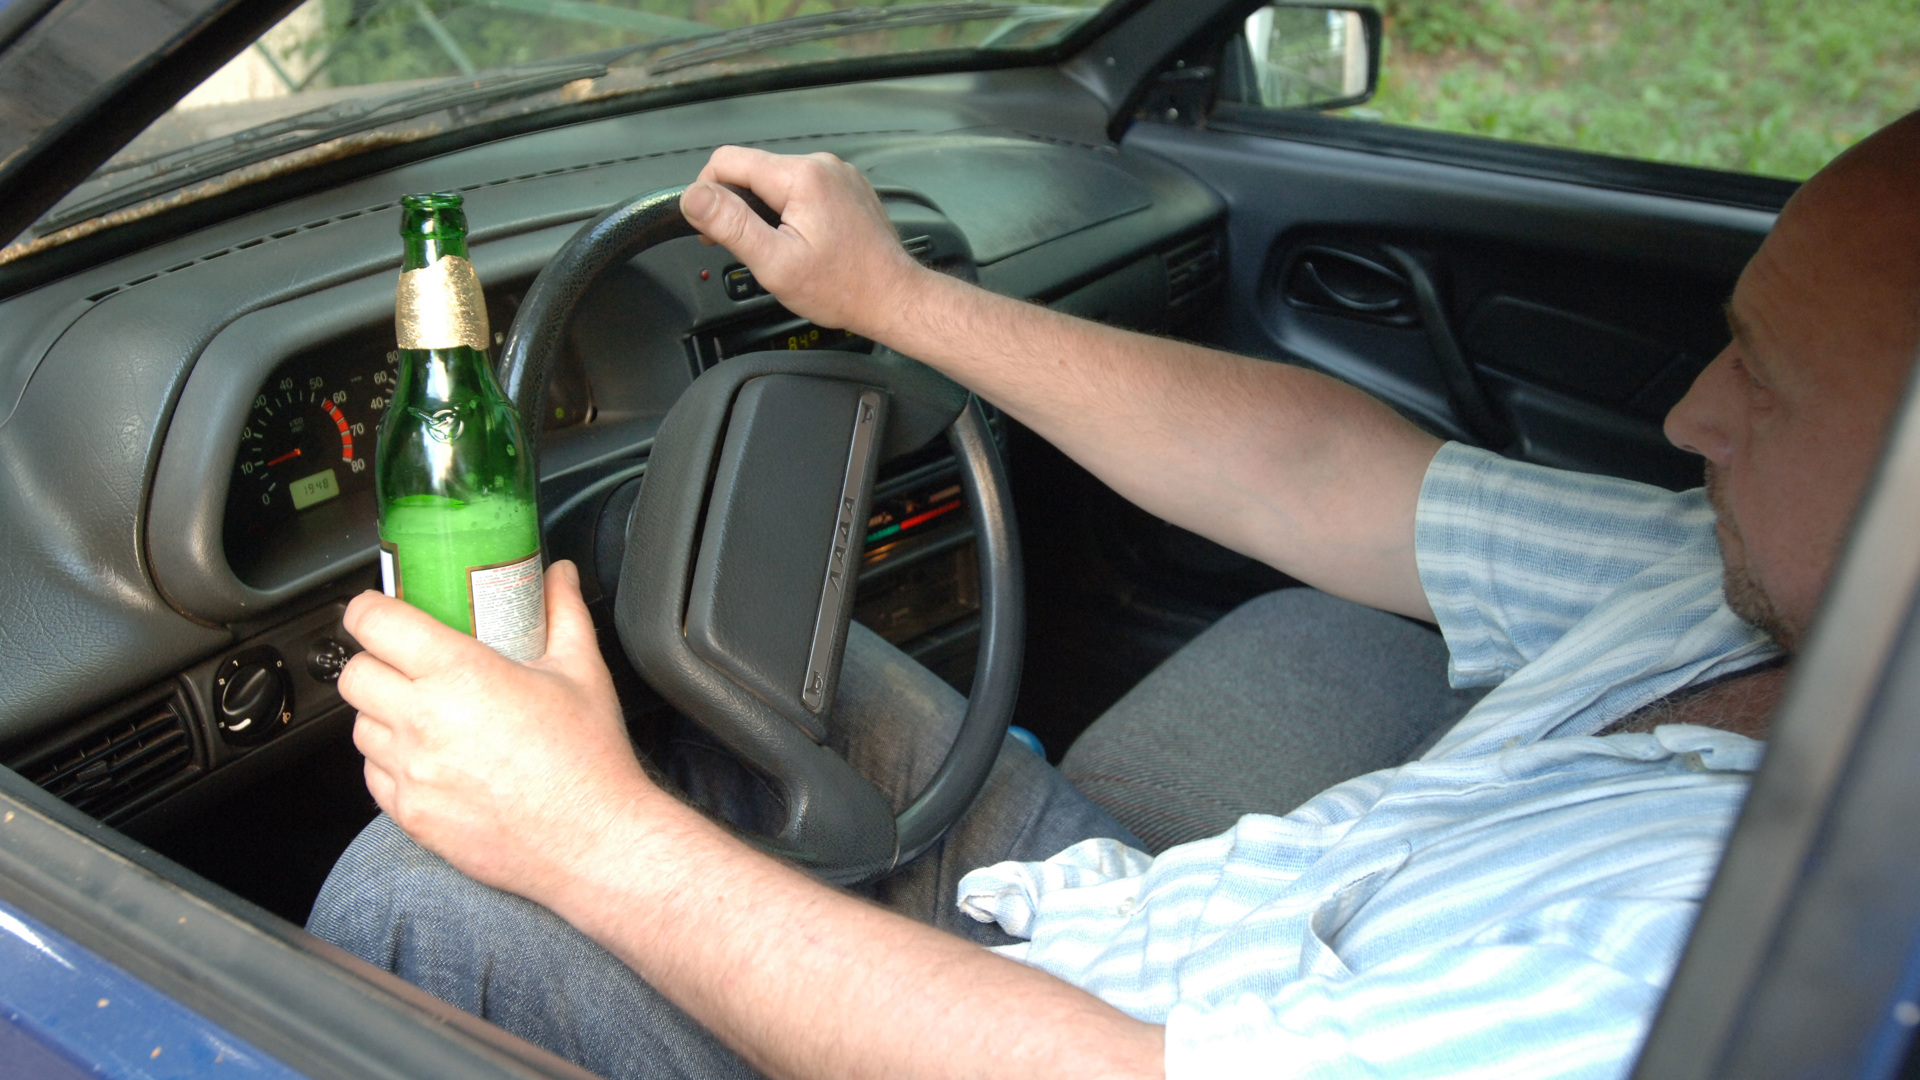 Повторное управление автомобилем в состоянии опьянения